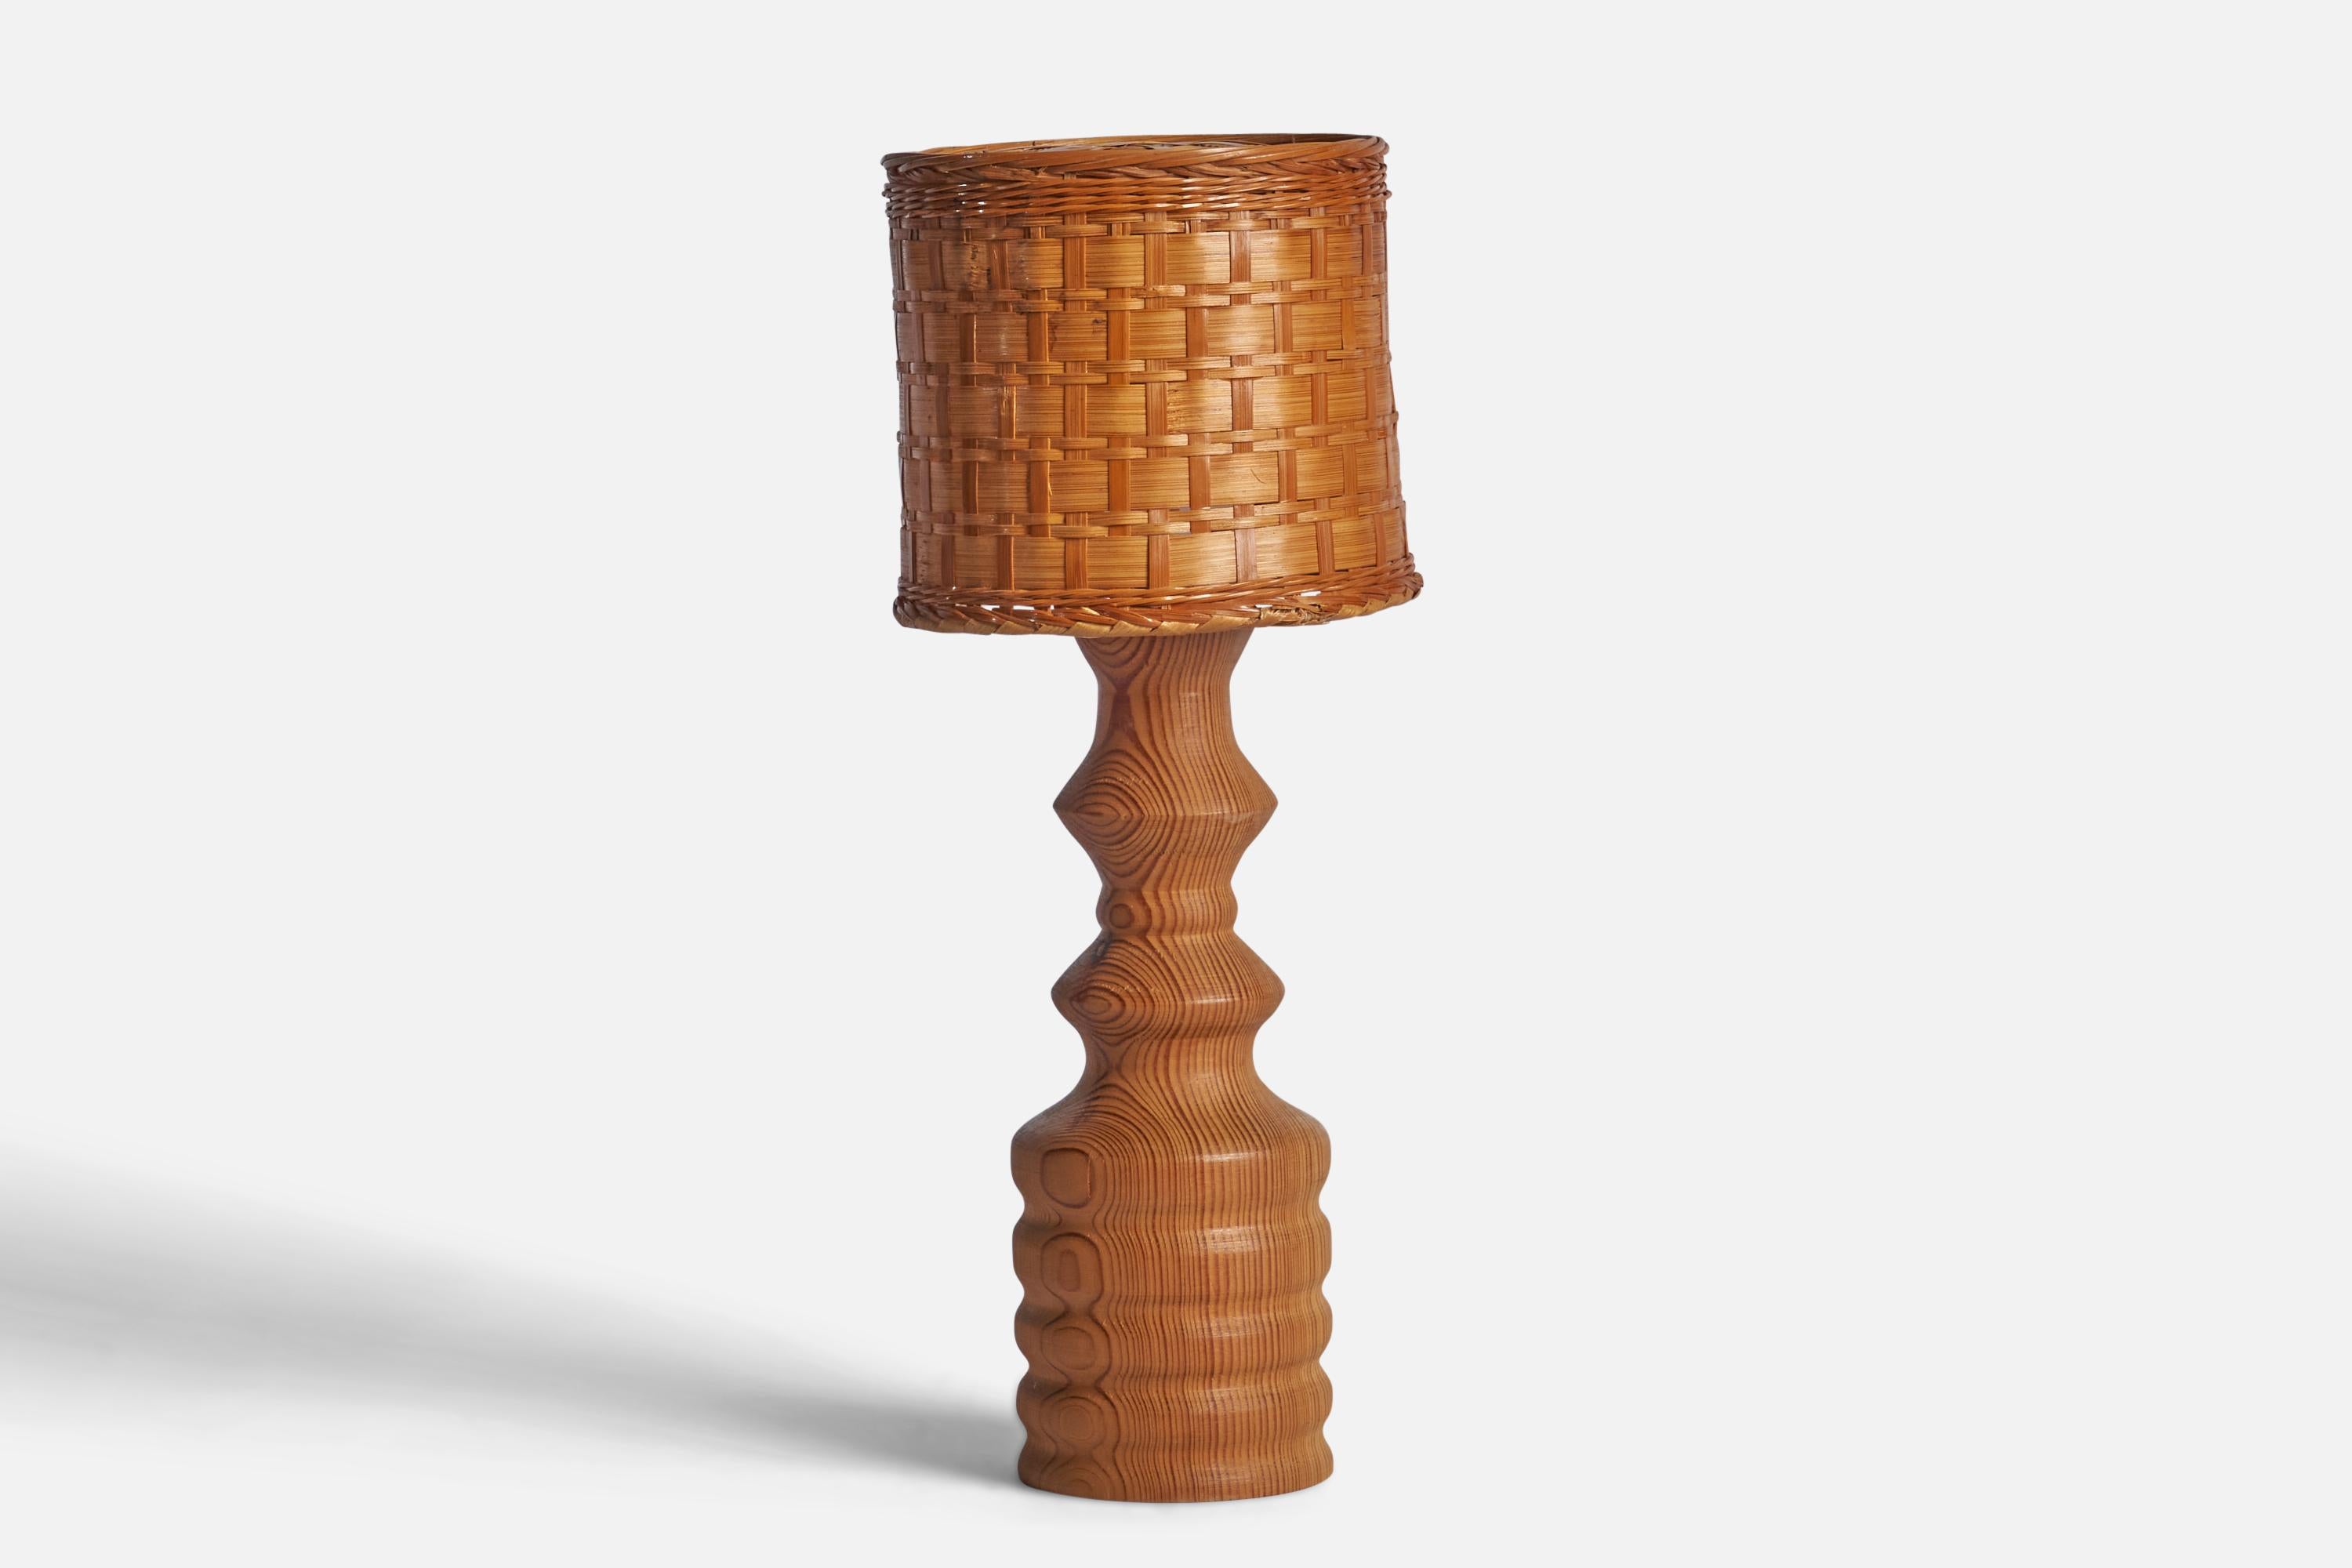 Lampe de table en pin et en rotin, conçue et produite en Suède, C.C..

Dimensions globales (pouces) : 16